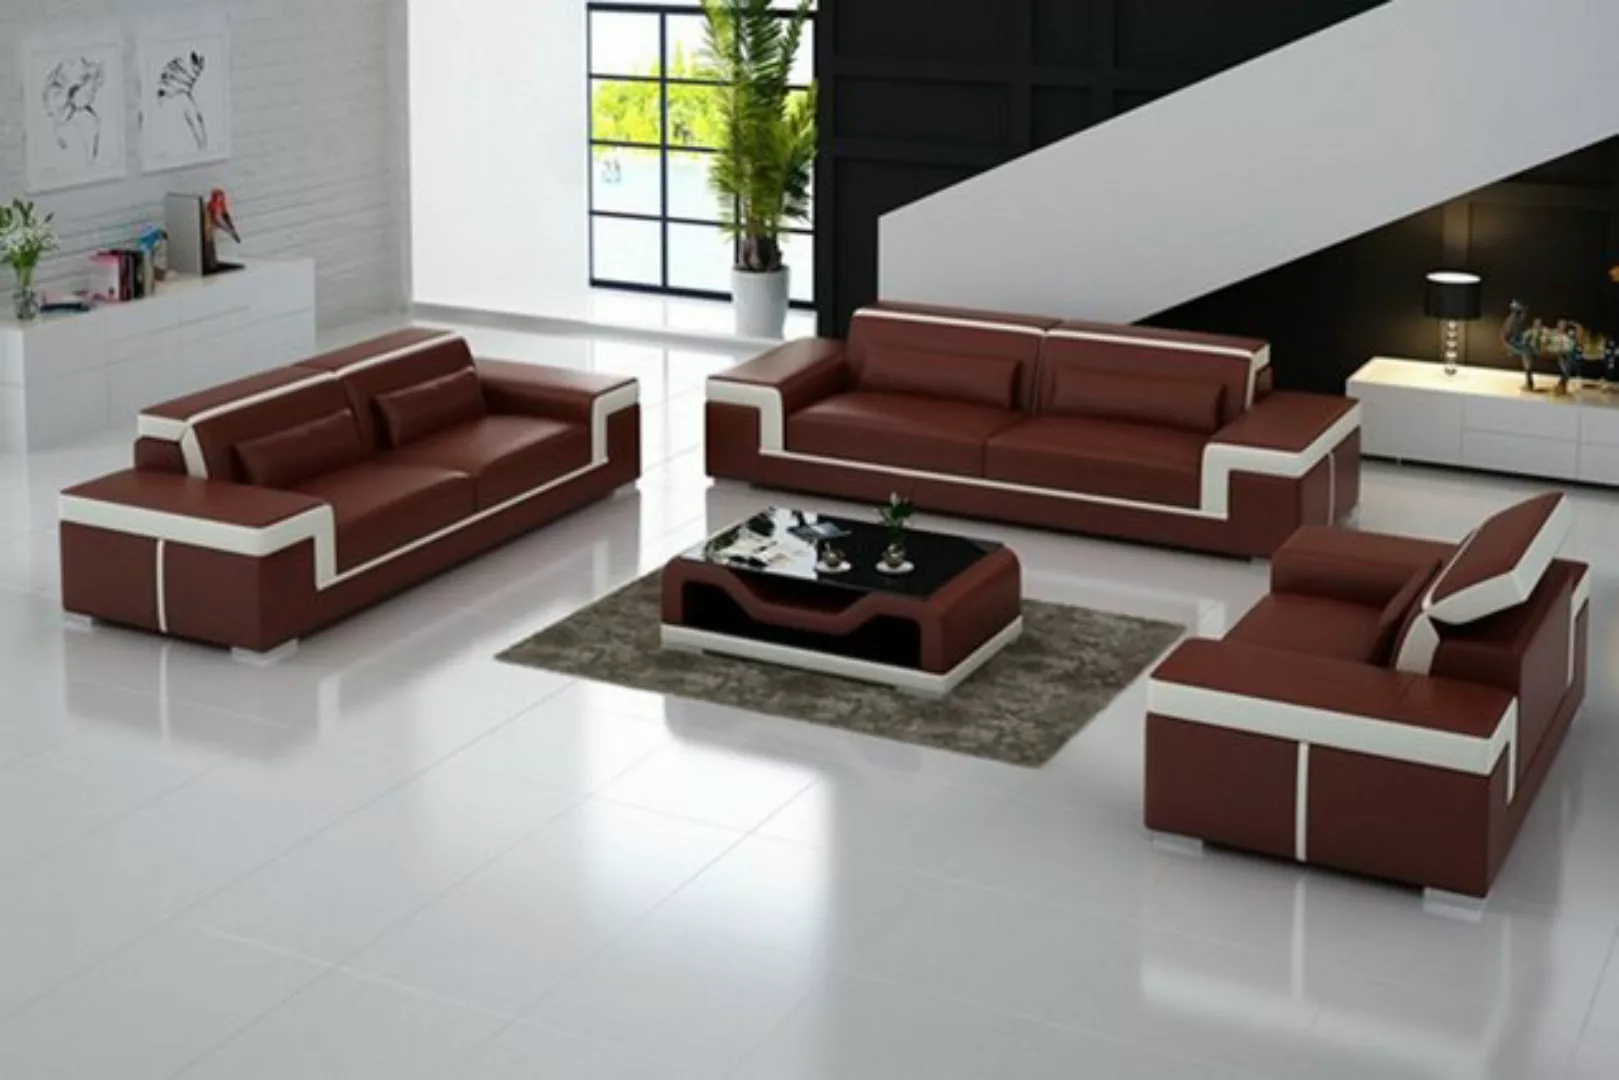 JVmoebel Sofa Schwarze Couchgarnitur 3+1+1 Moderne Sofas Polstermöbel Desig günstig online kaufen